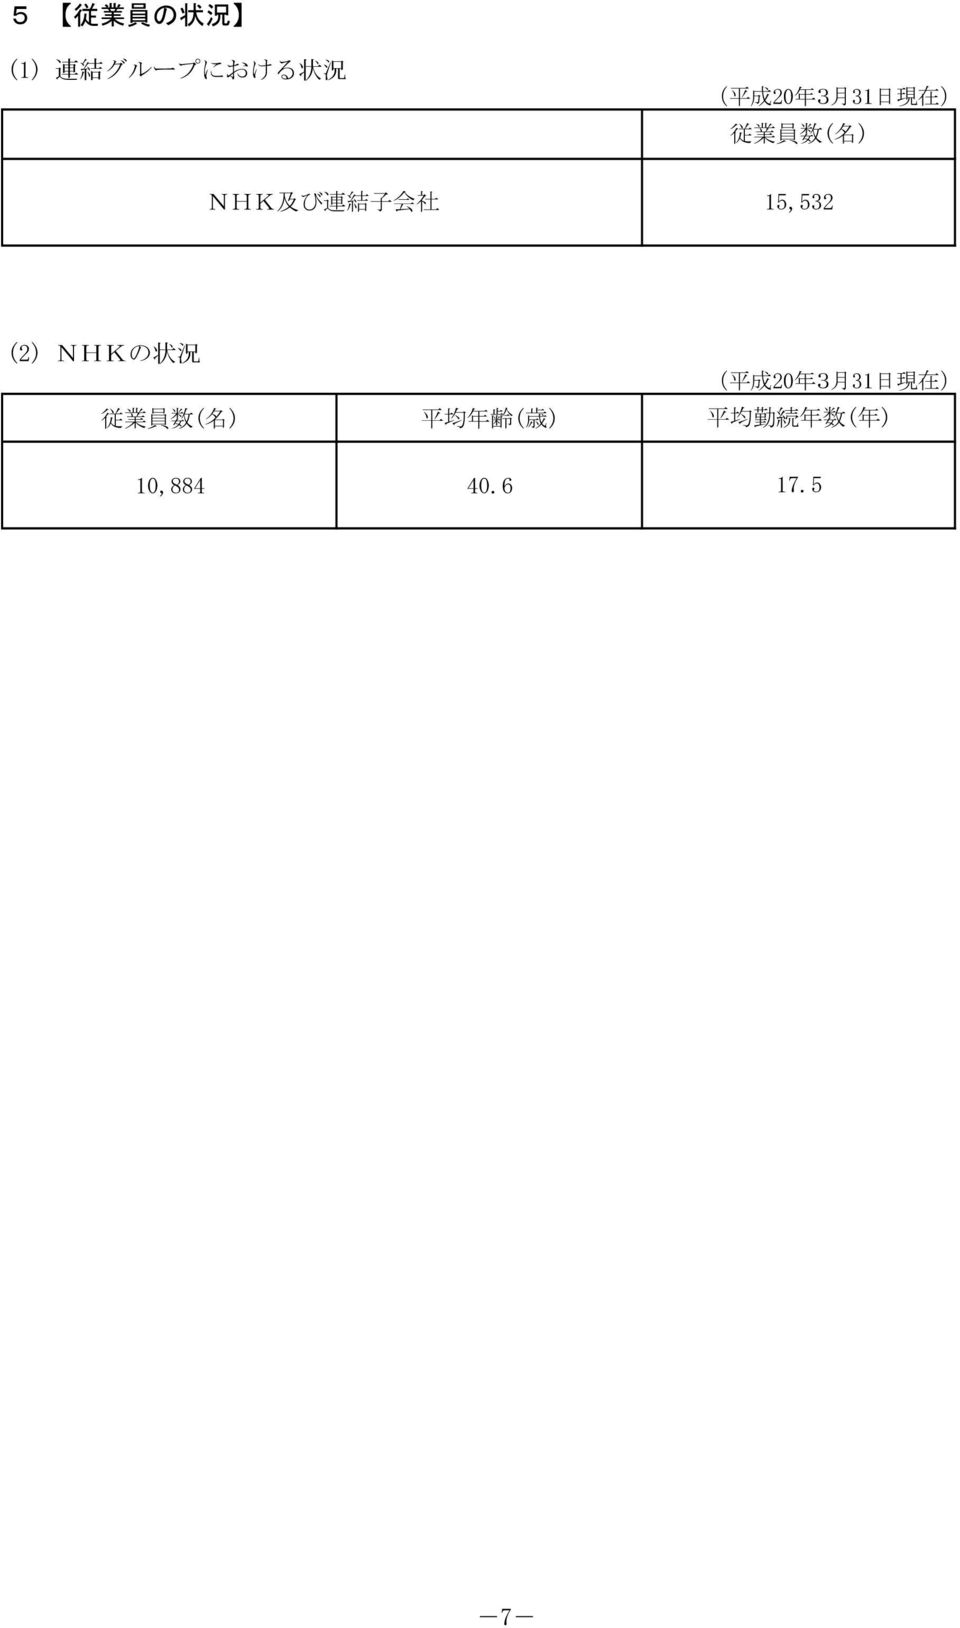 (2) NHKの 状 況 従 業 員 数 ( 名 ) 平 均 年 齢 ( 歳 ) 10,884 40.